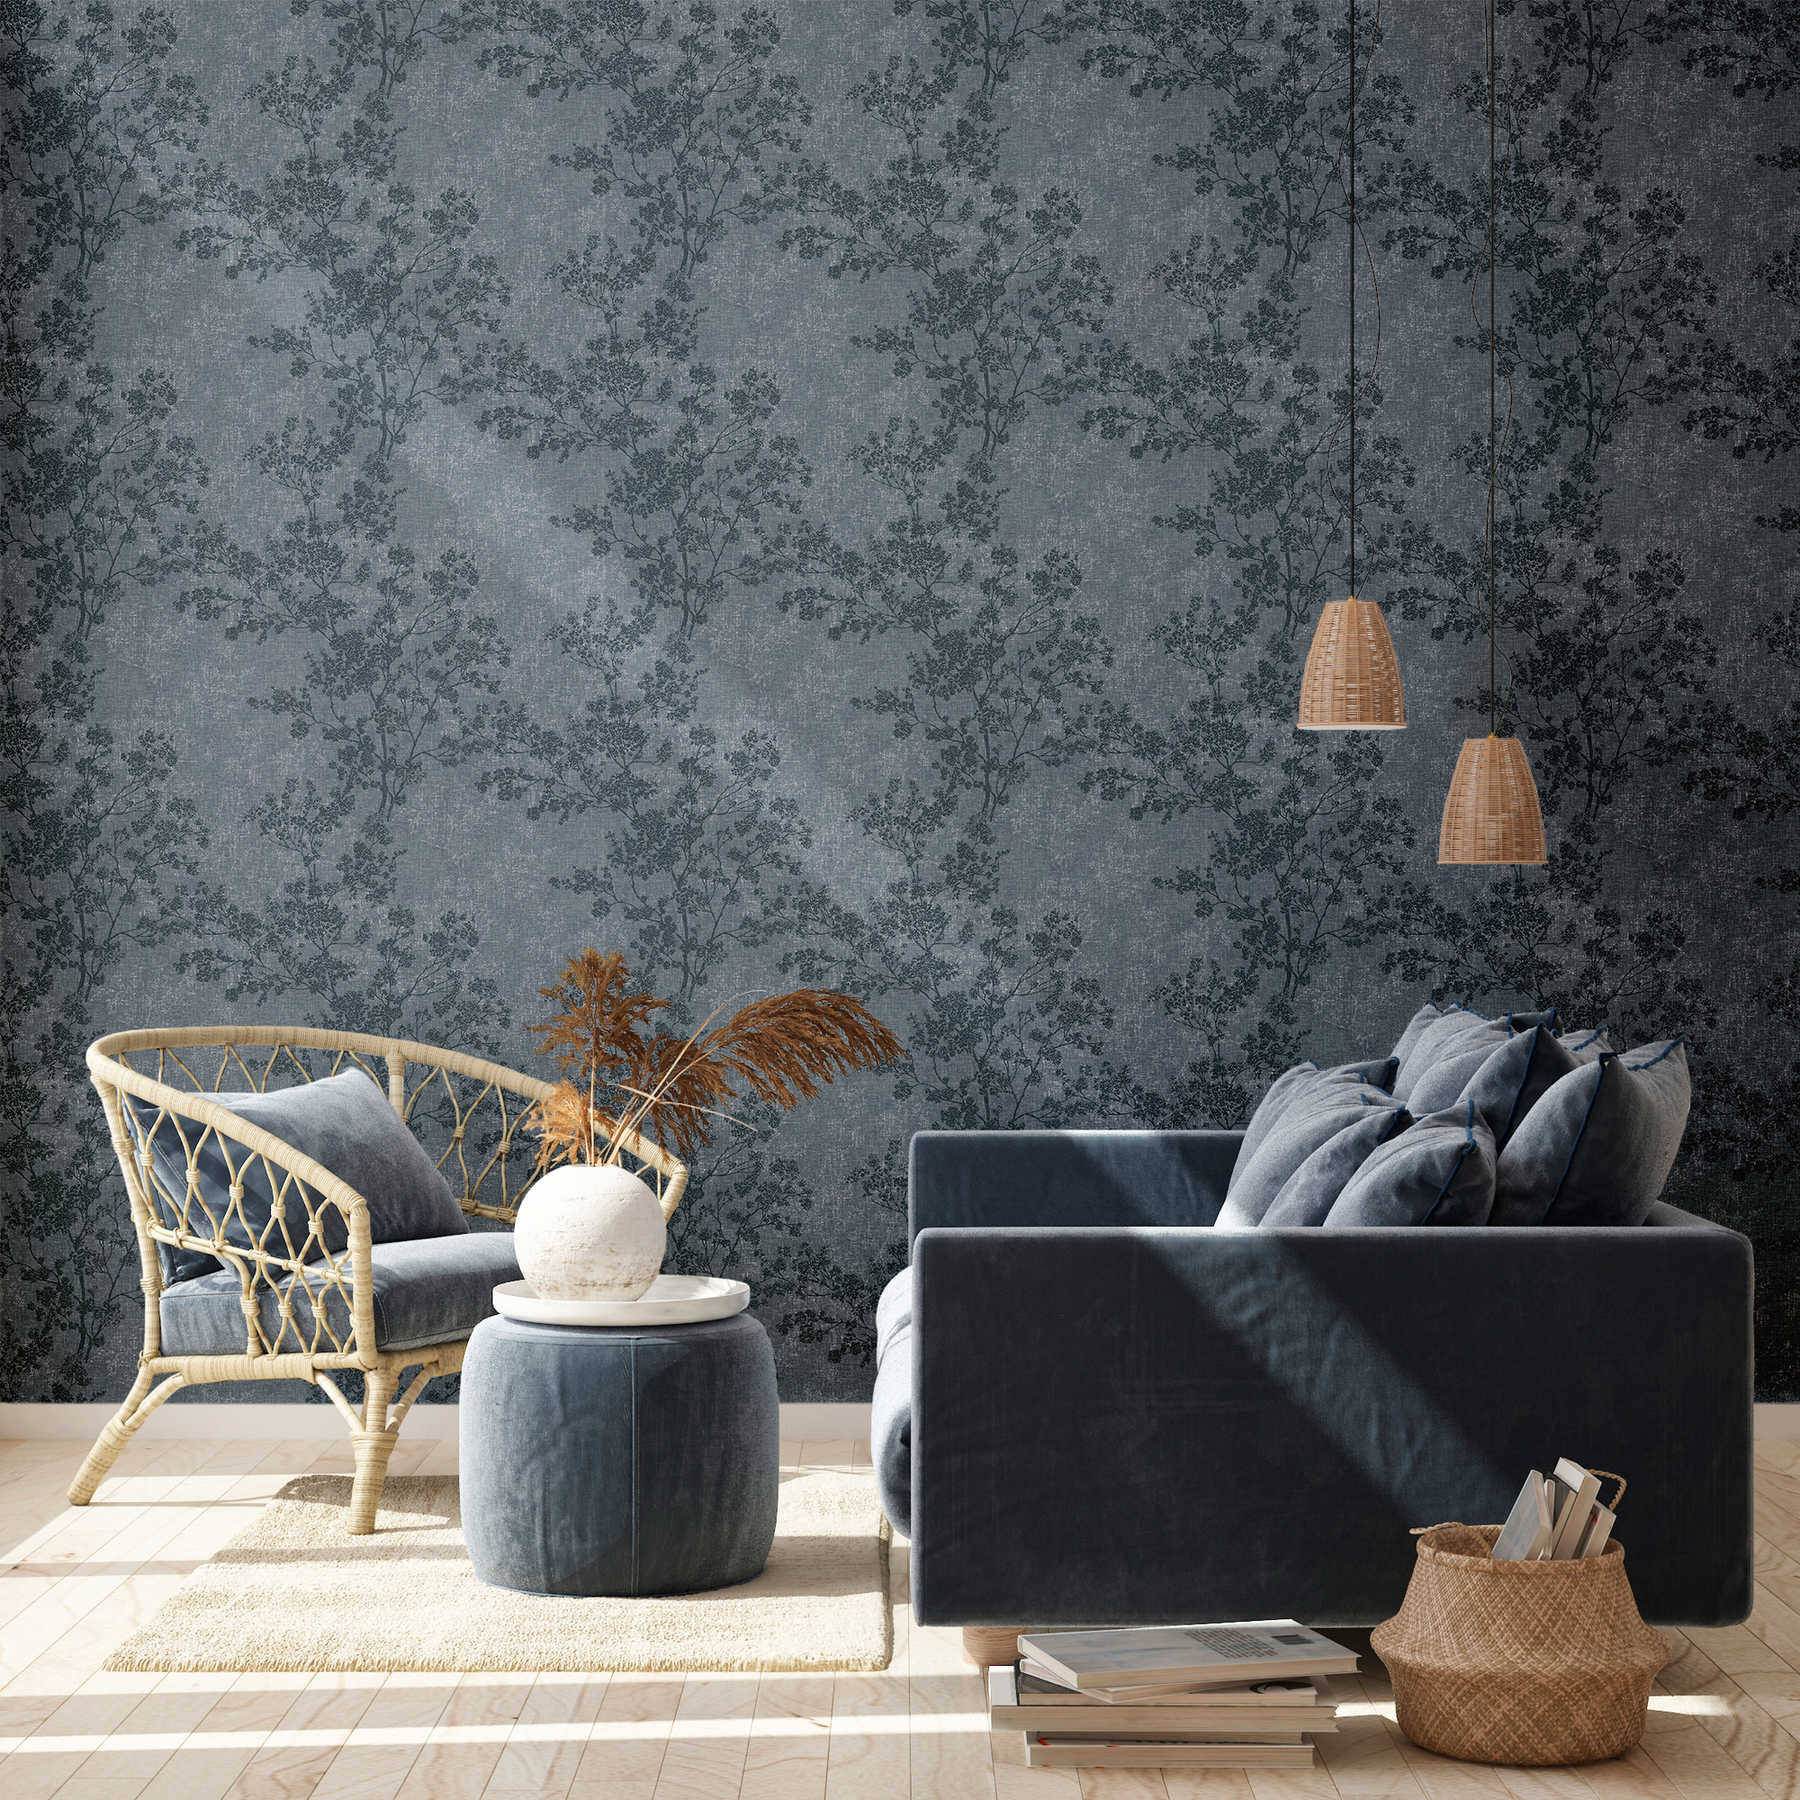             wallpaper leaves pattern in linen look - blue
        